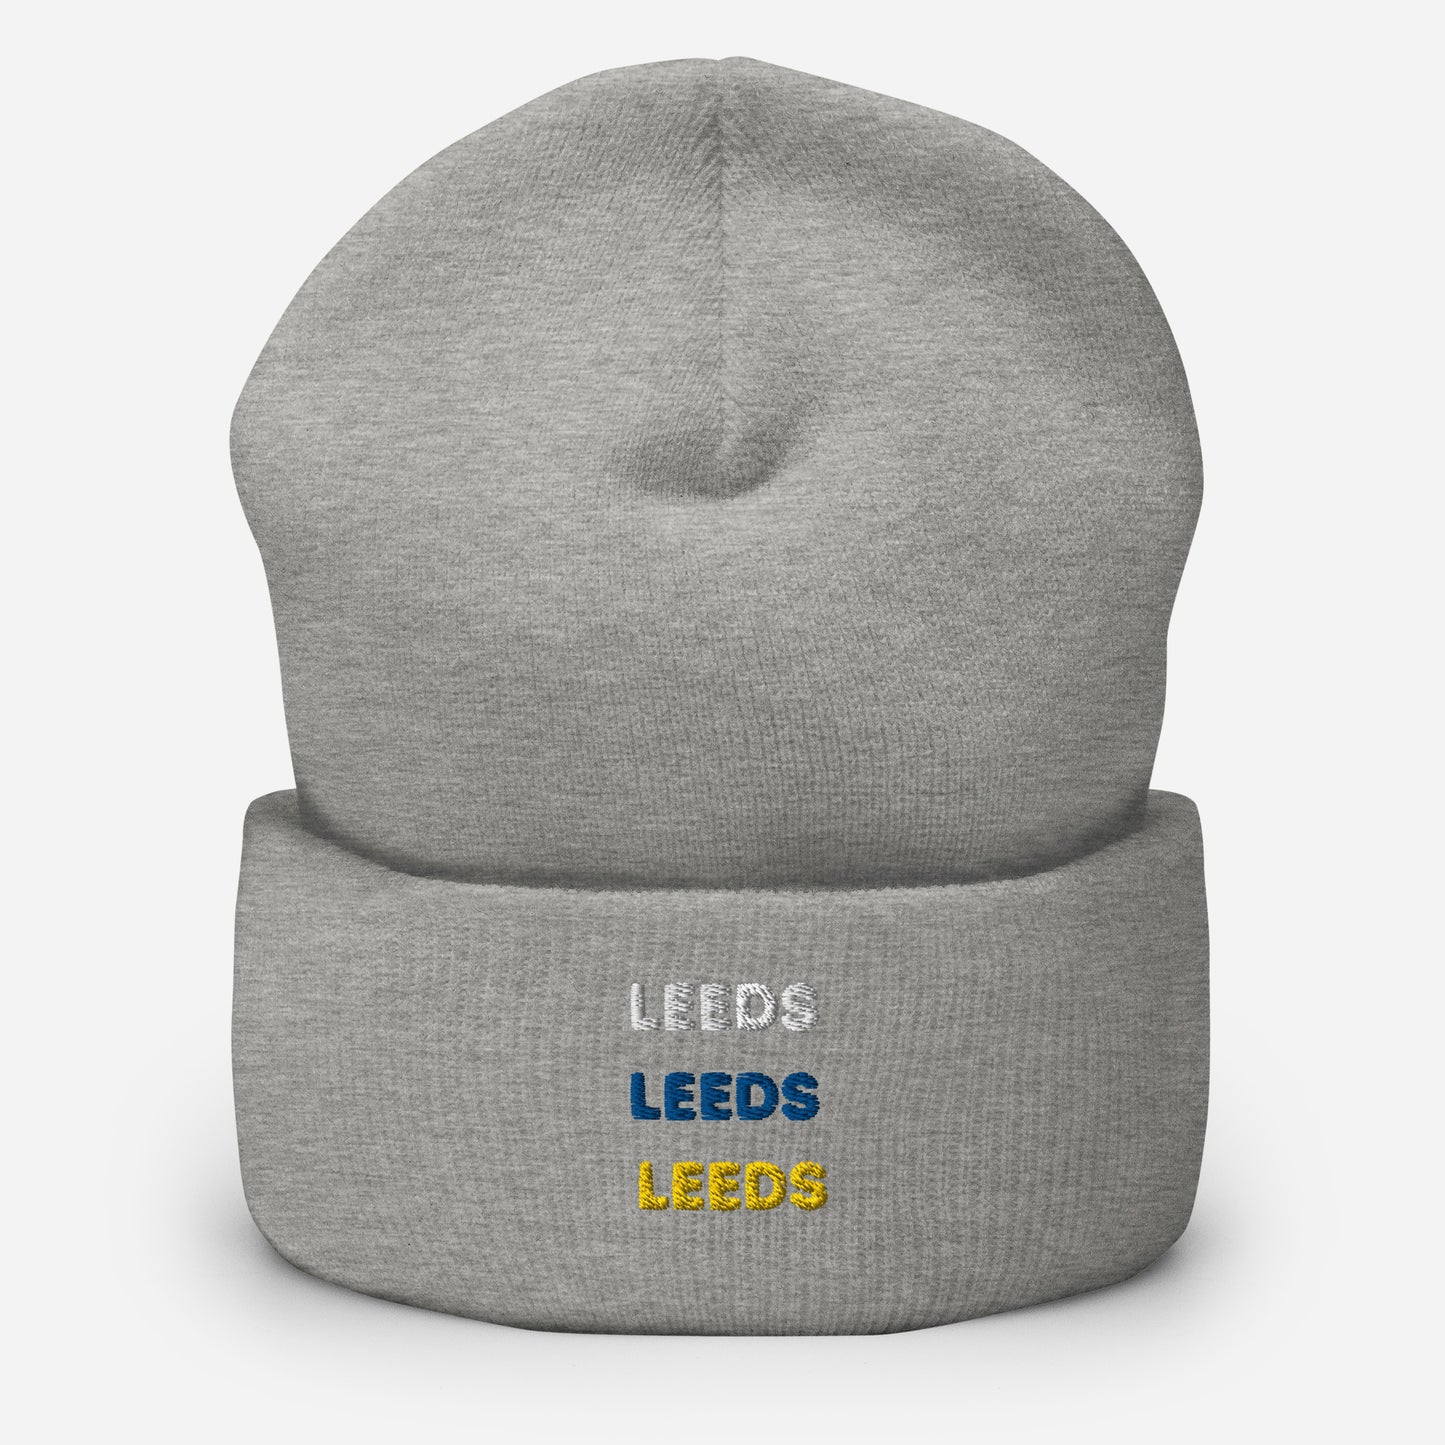 Leeds Leeds Leeds Cuffed Beanie Hat